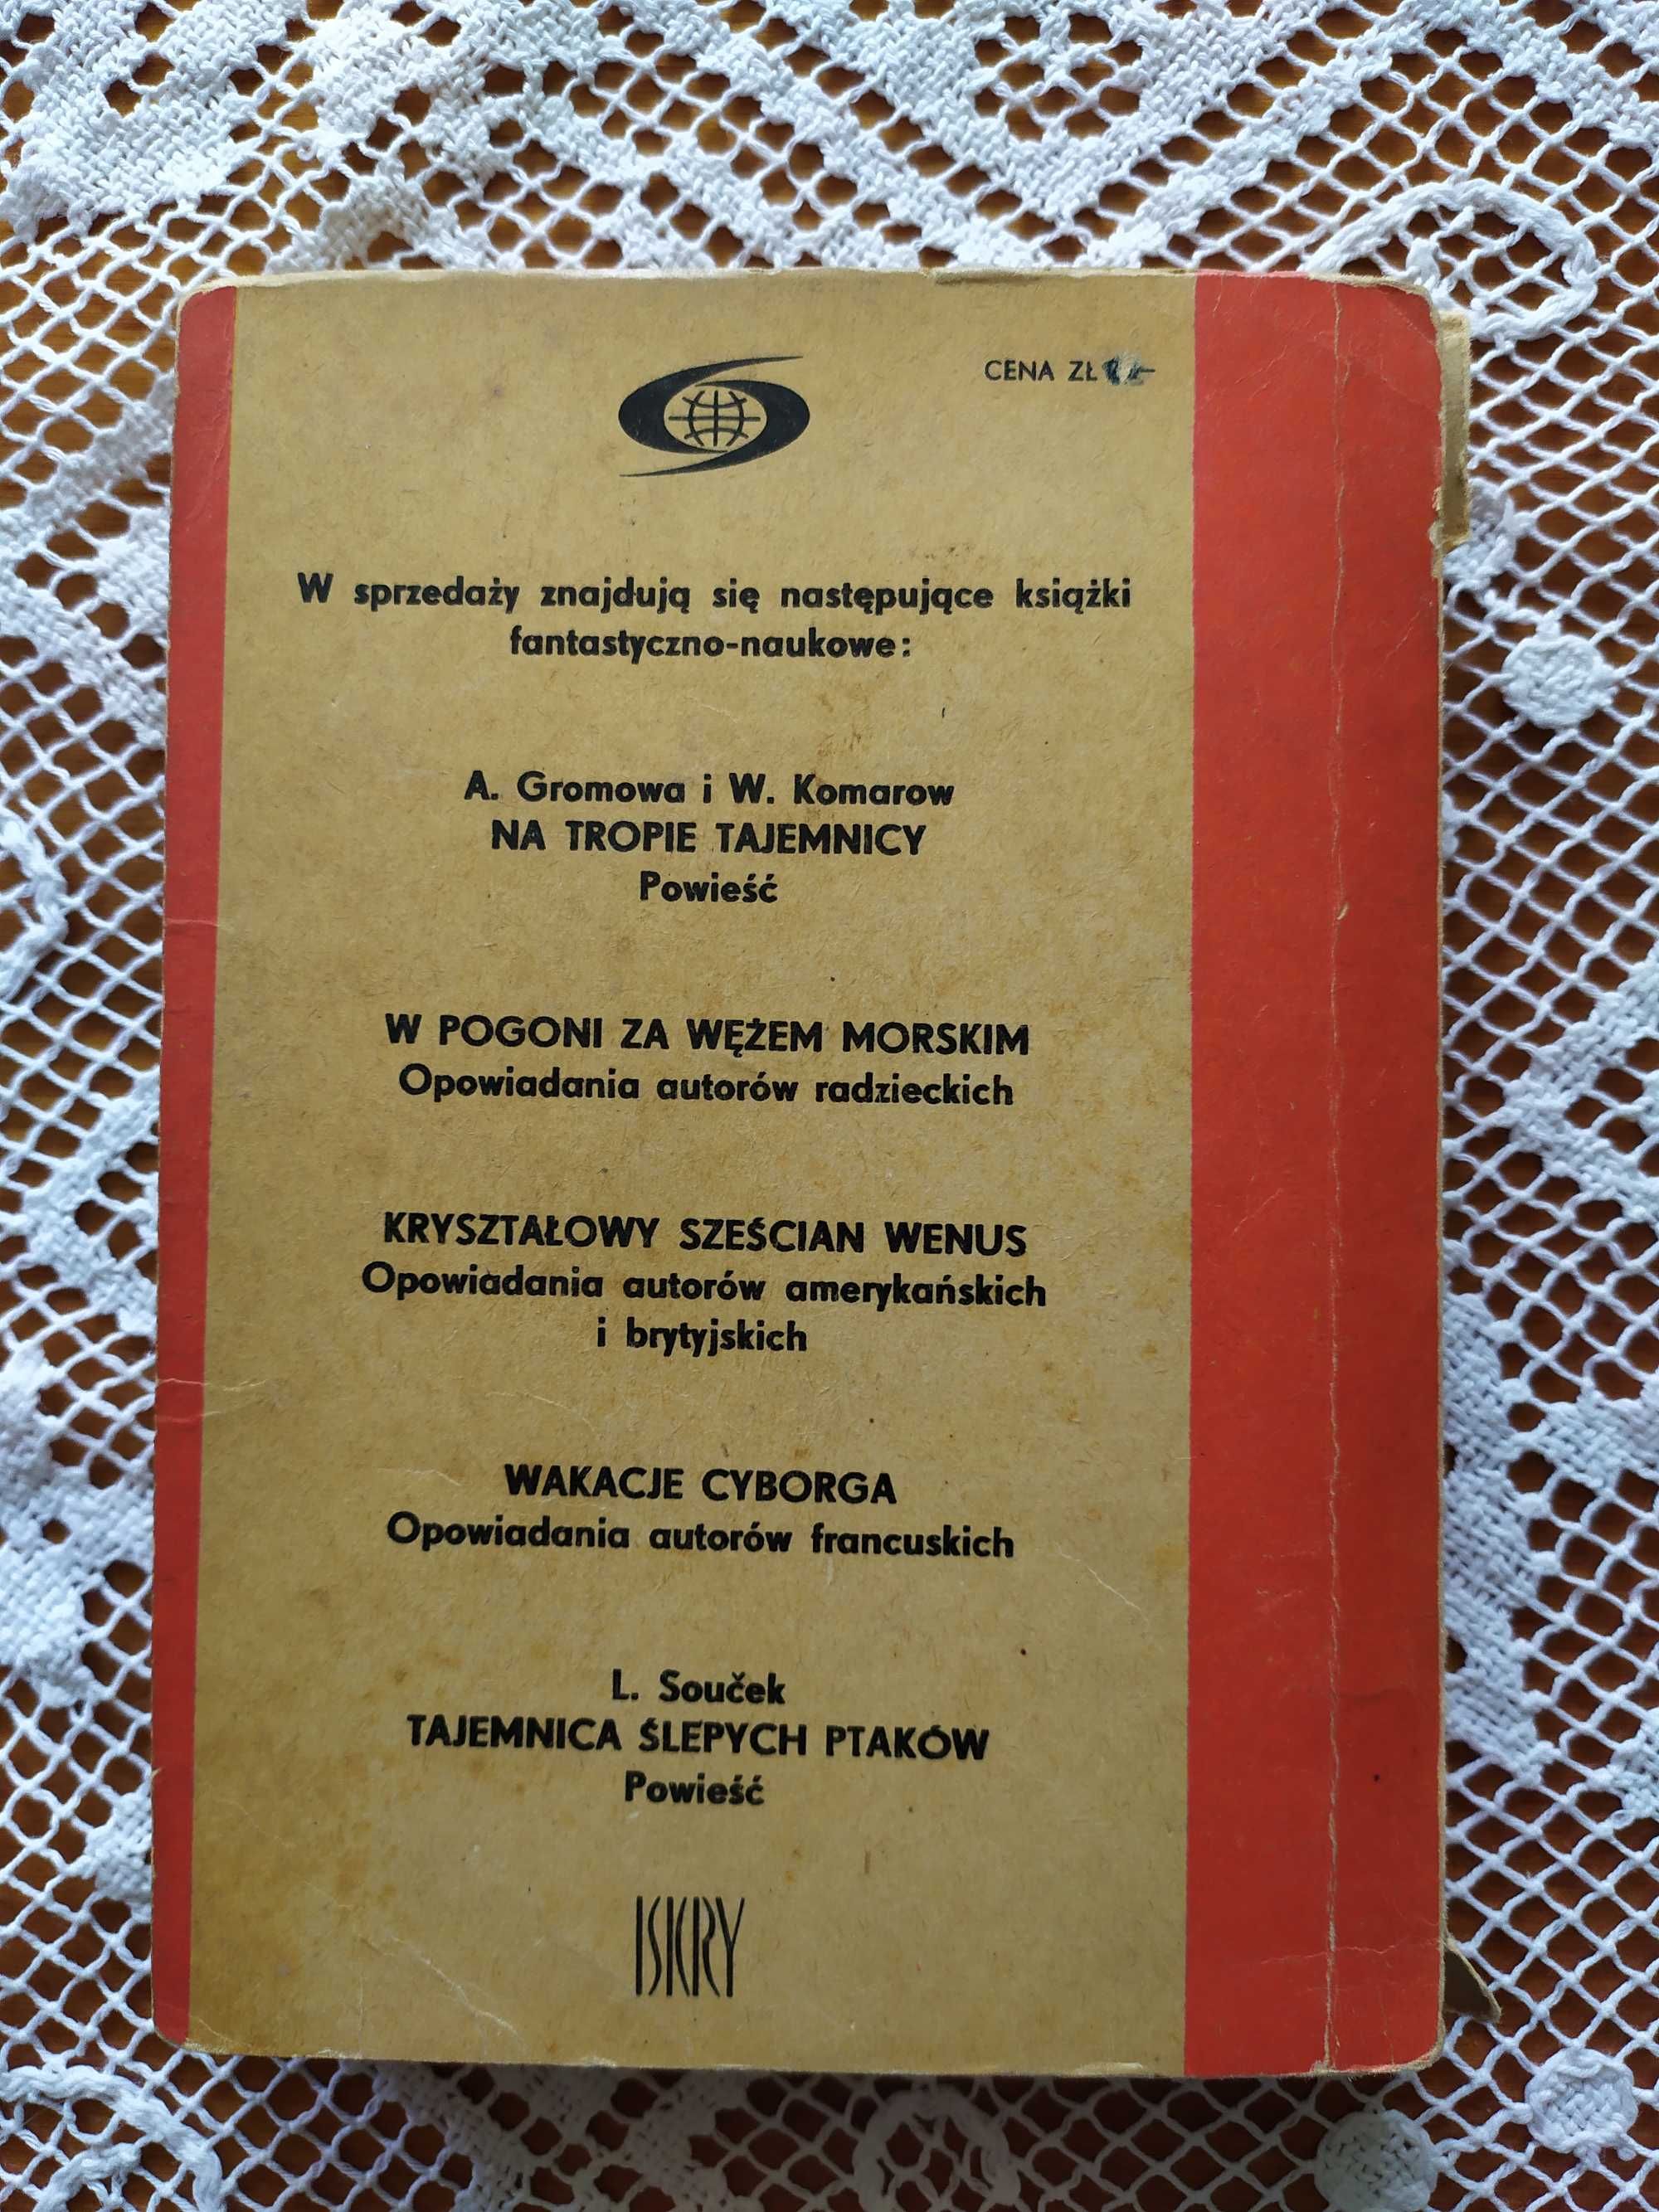 Mgławica andromedy, Iwan Jefremow, Fantastyka przygoda 1963